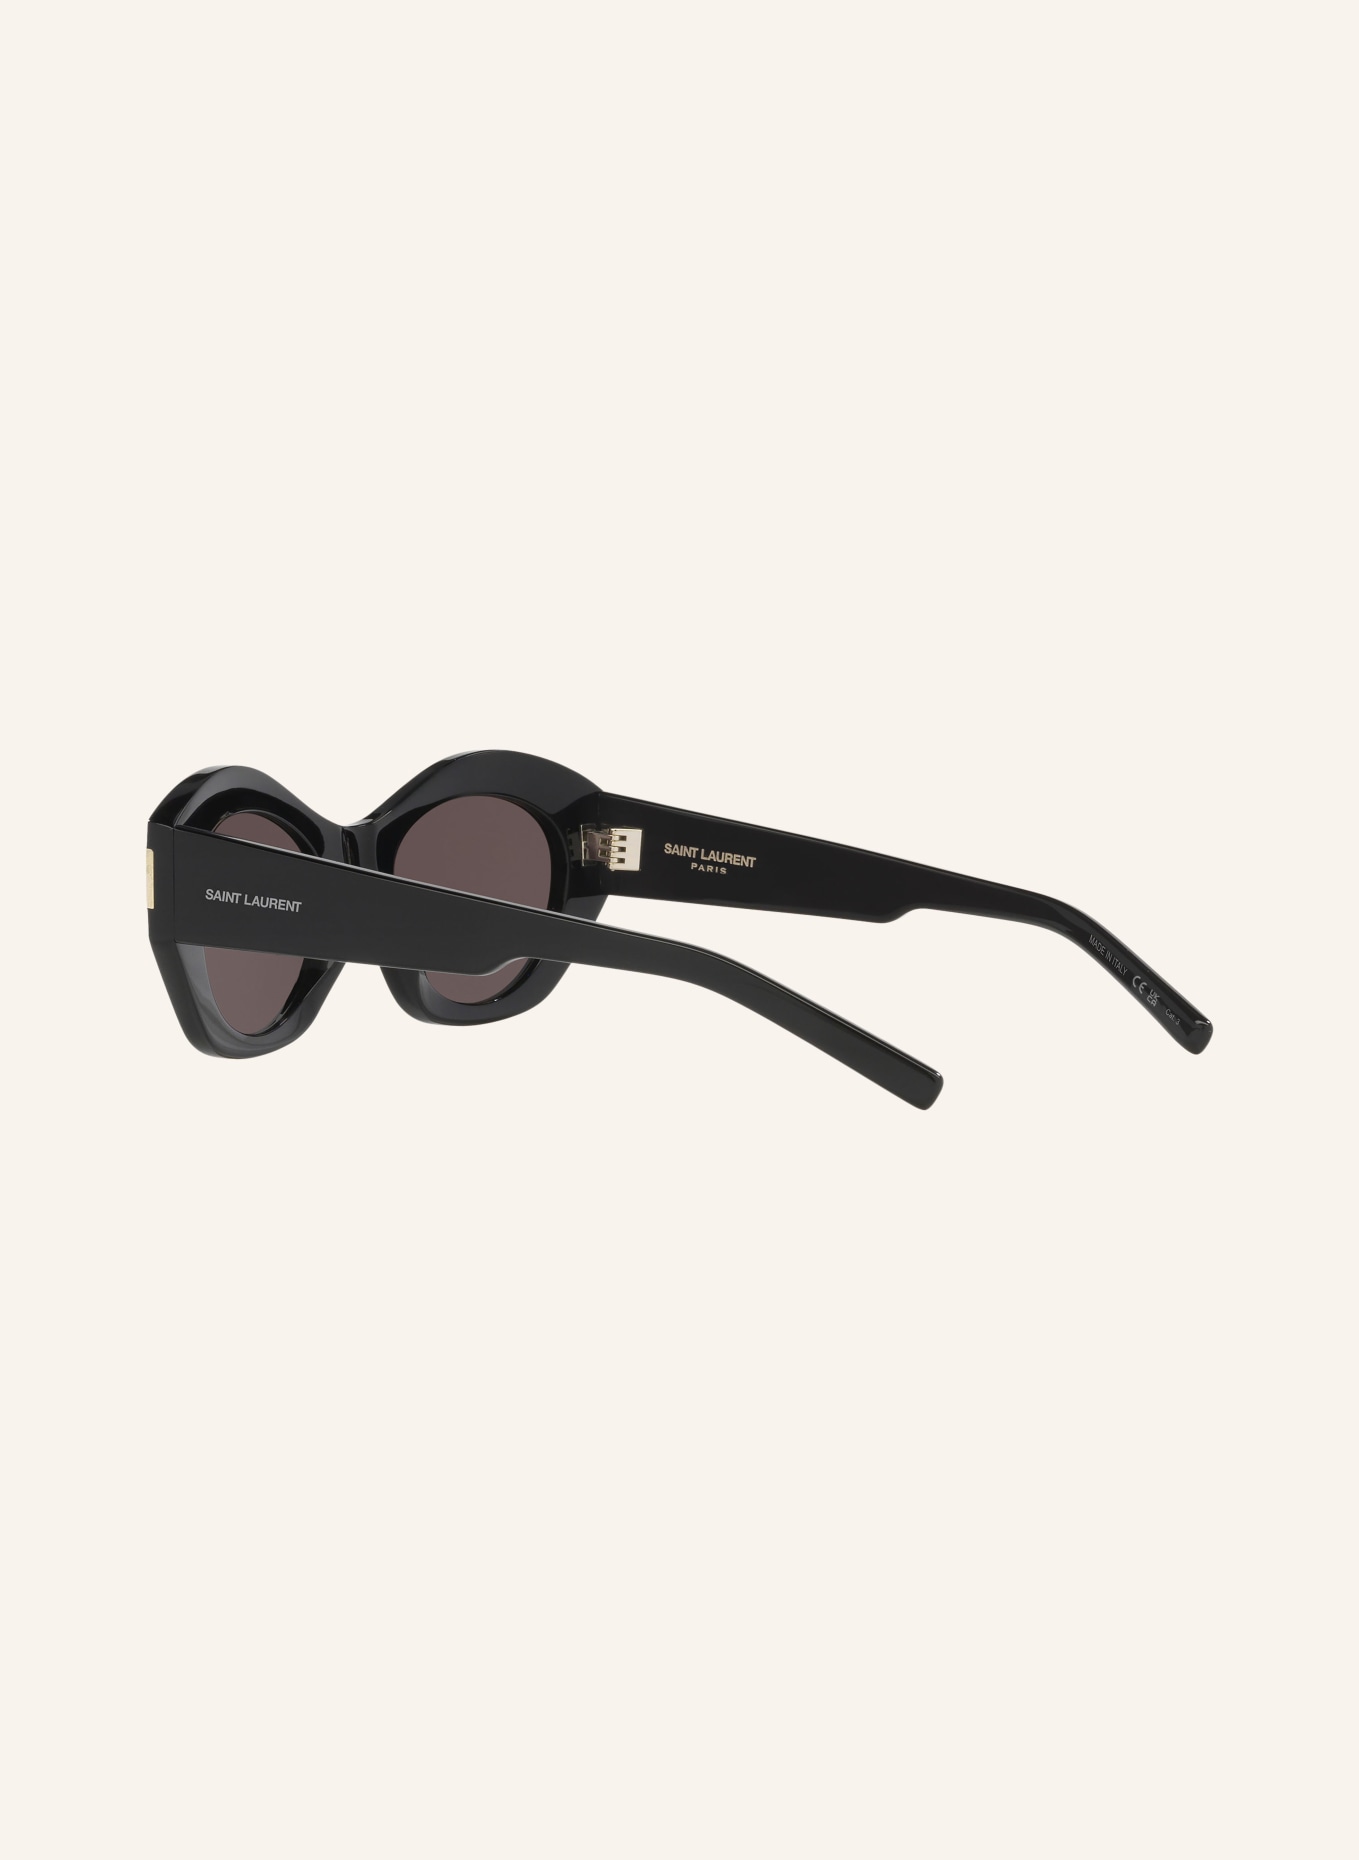 SAINT LAURENT Sunglasses SL 639, Color: 1100A1 - BLACK/GRAY (Image 4)